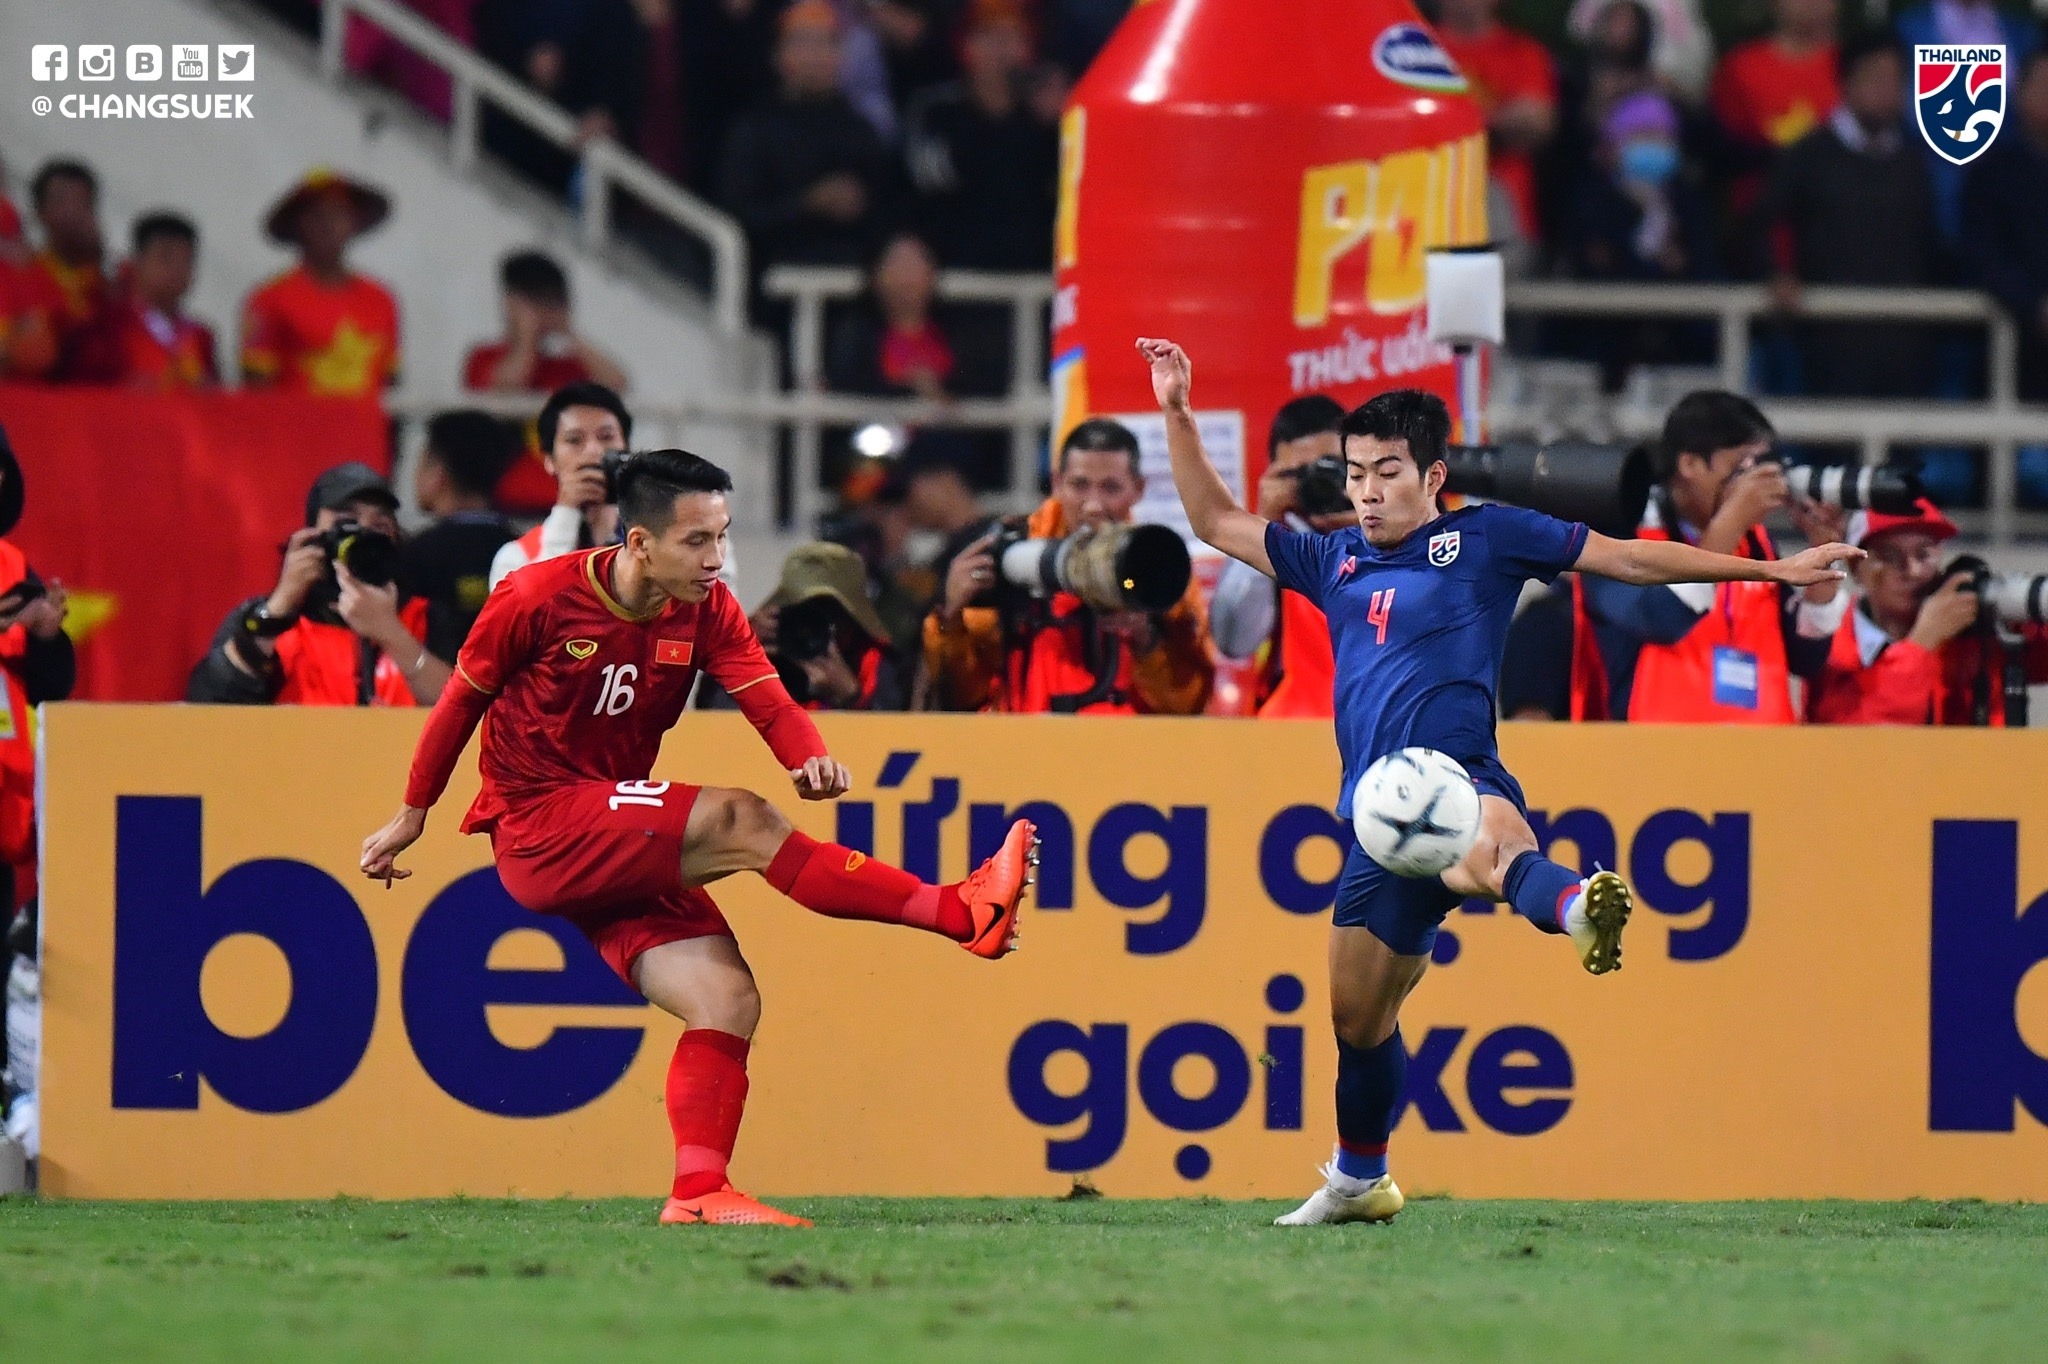 Hòa Thái Lan, Việt Nam cần bao nhiêu điểm nữa để đi tiếp ở World Cup 2022? - Bóng Đá